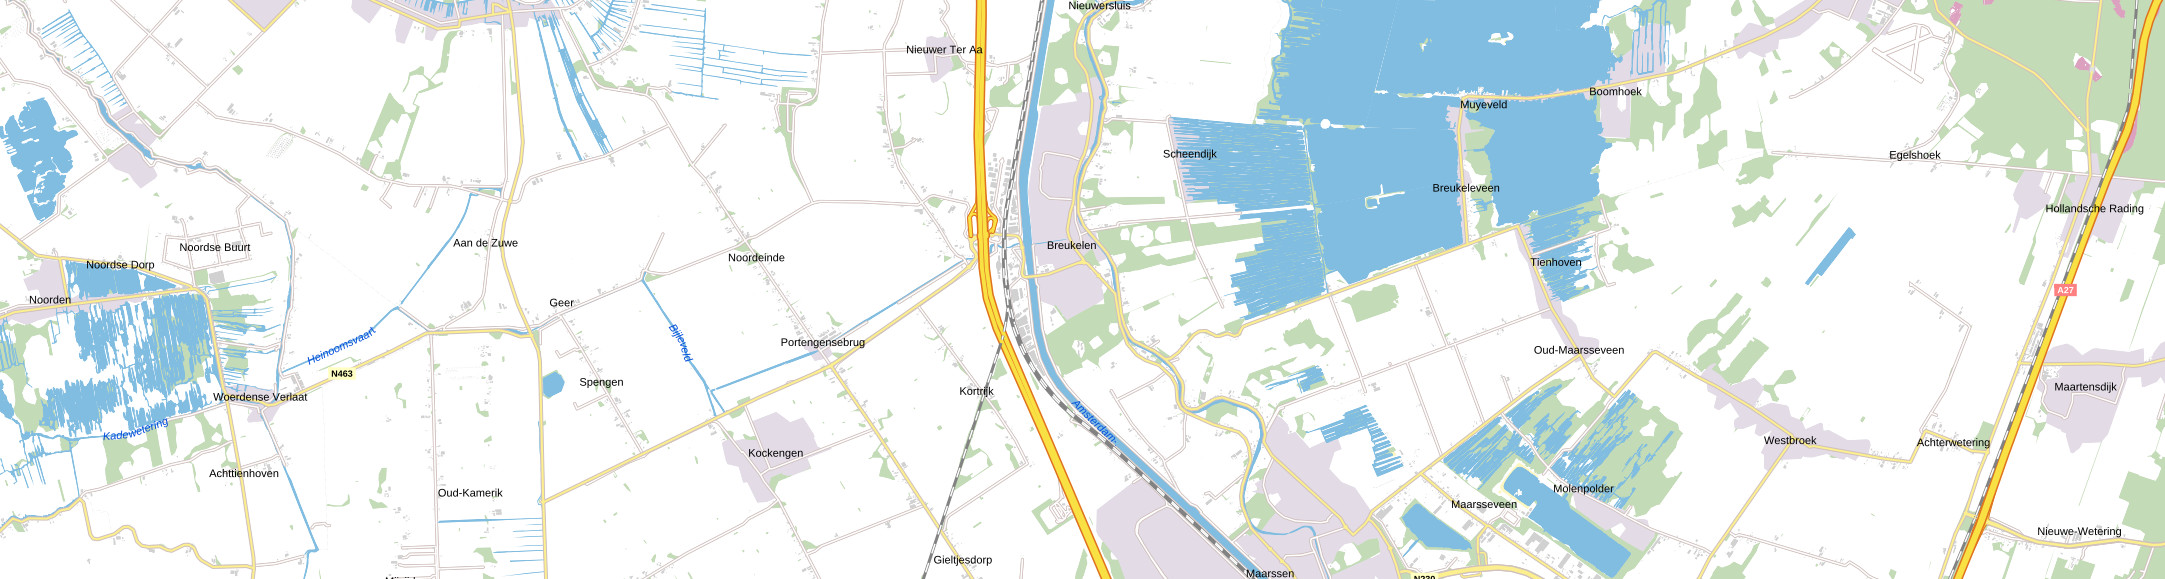 Marskramerpad Rijnsaterwoude – Noorden – Breukelen – Hollandsche Rading: Hans Schoenmakers (34 km)